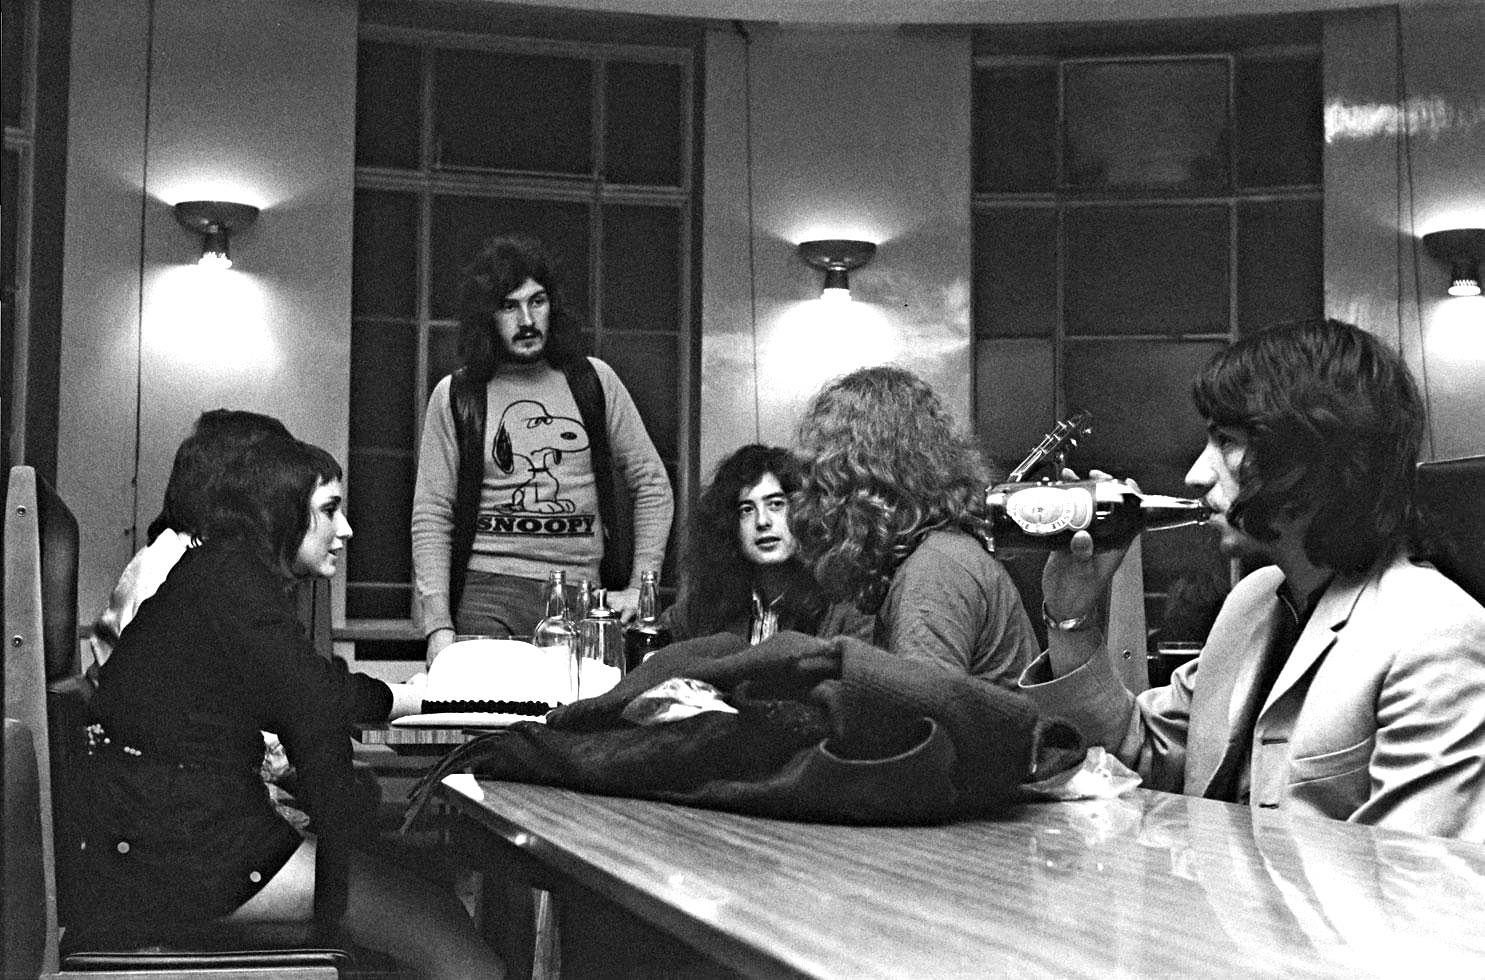 John Rettie Black and White Photograph – Led Zeppelin – Leeds – Leeds – 1970